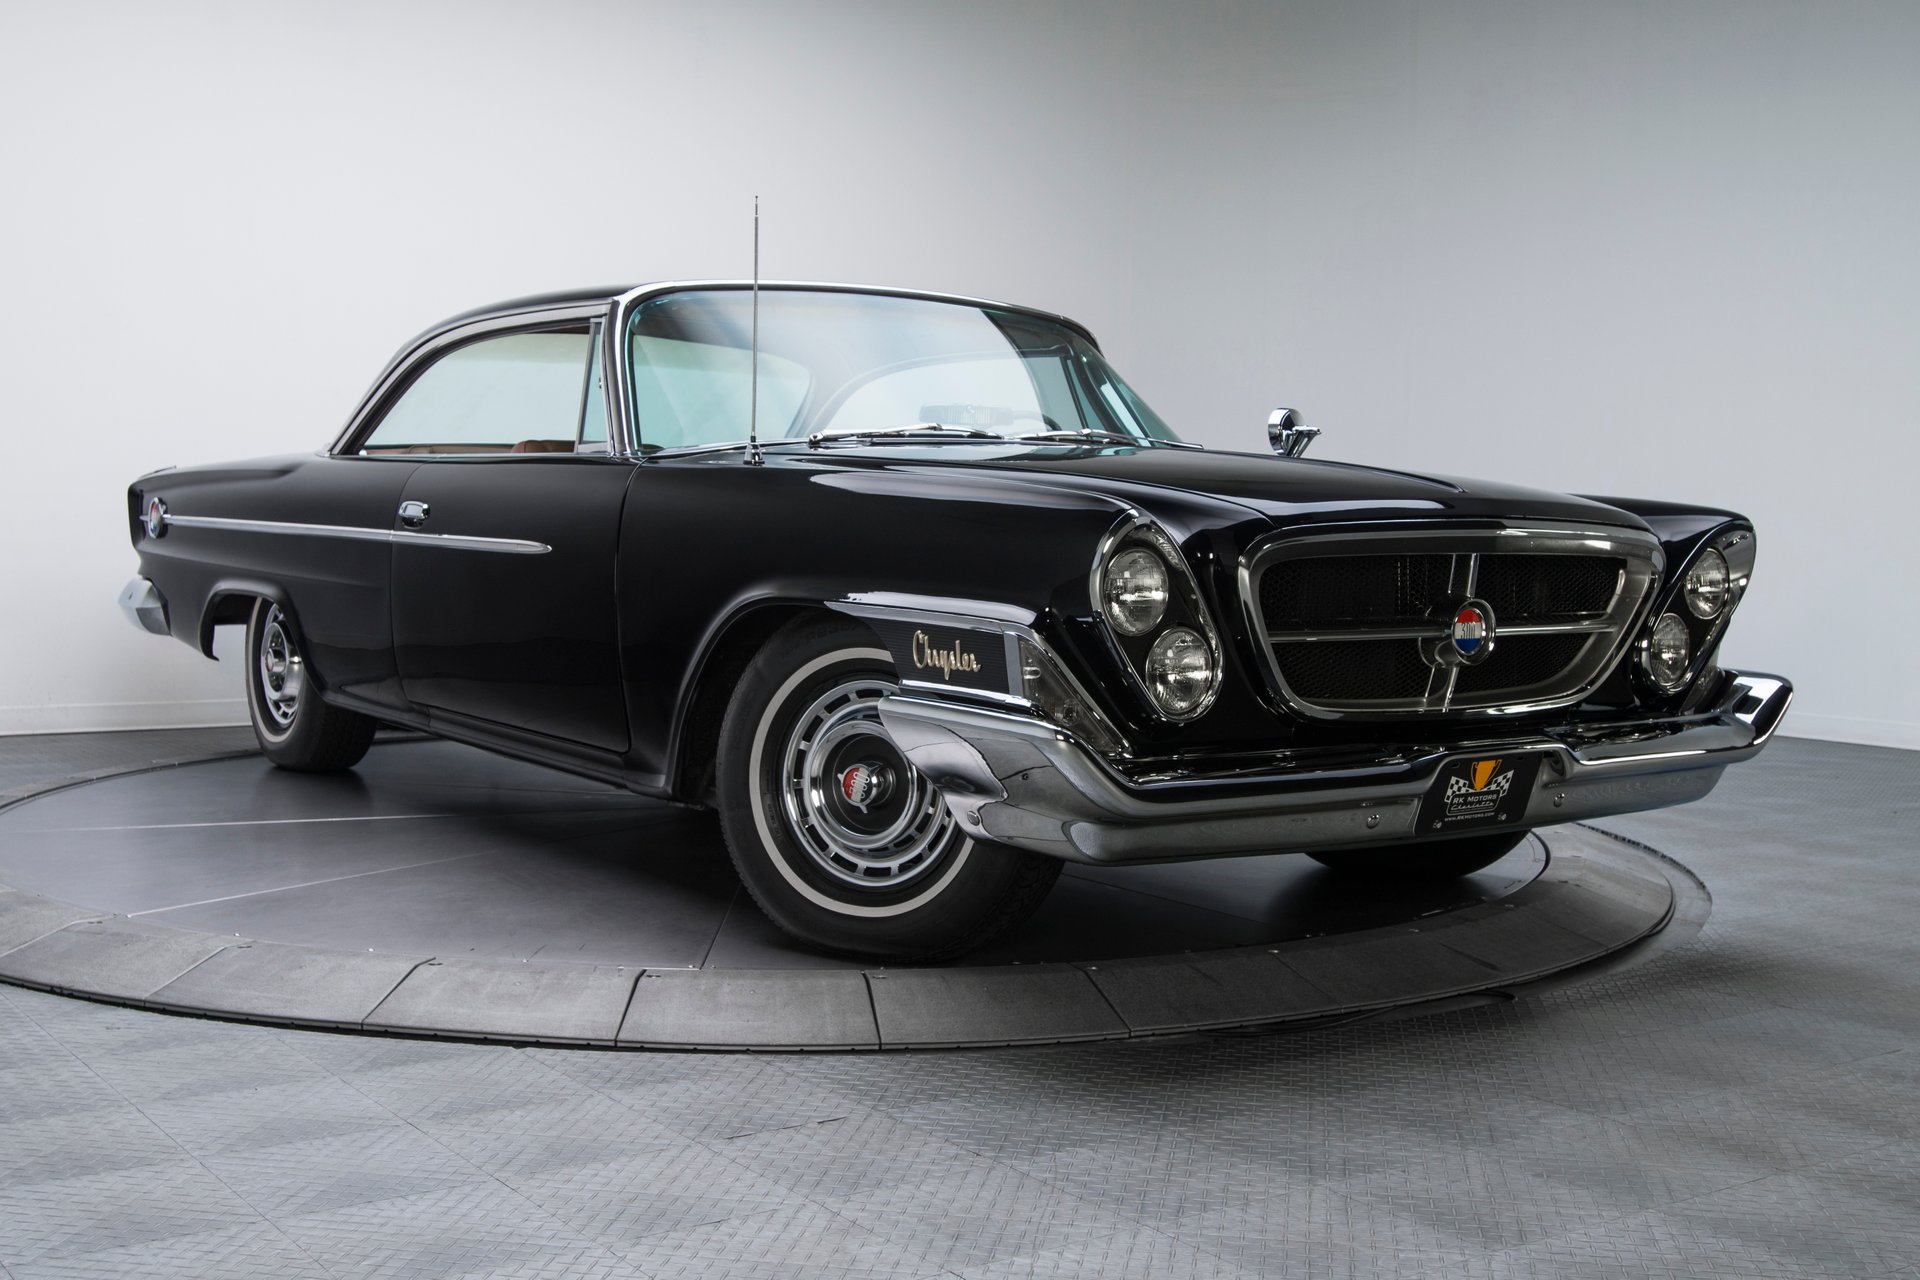 For Sale 1962 Chrysler 300H